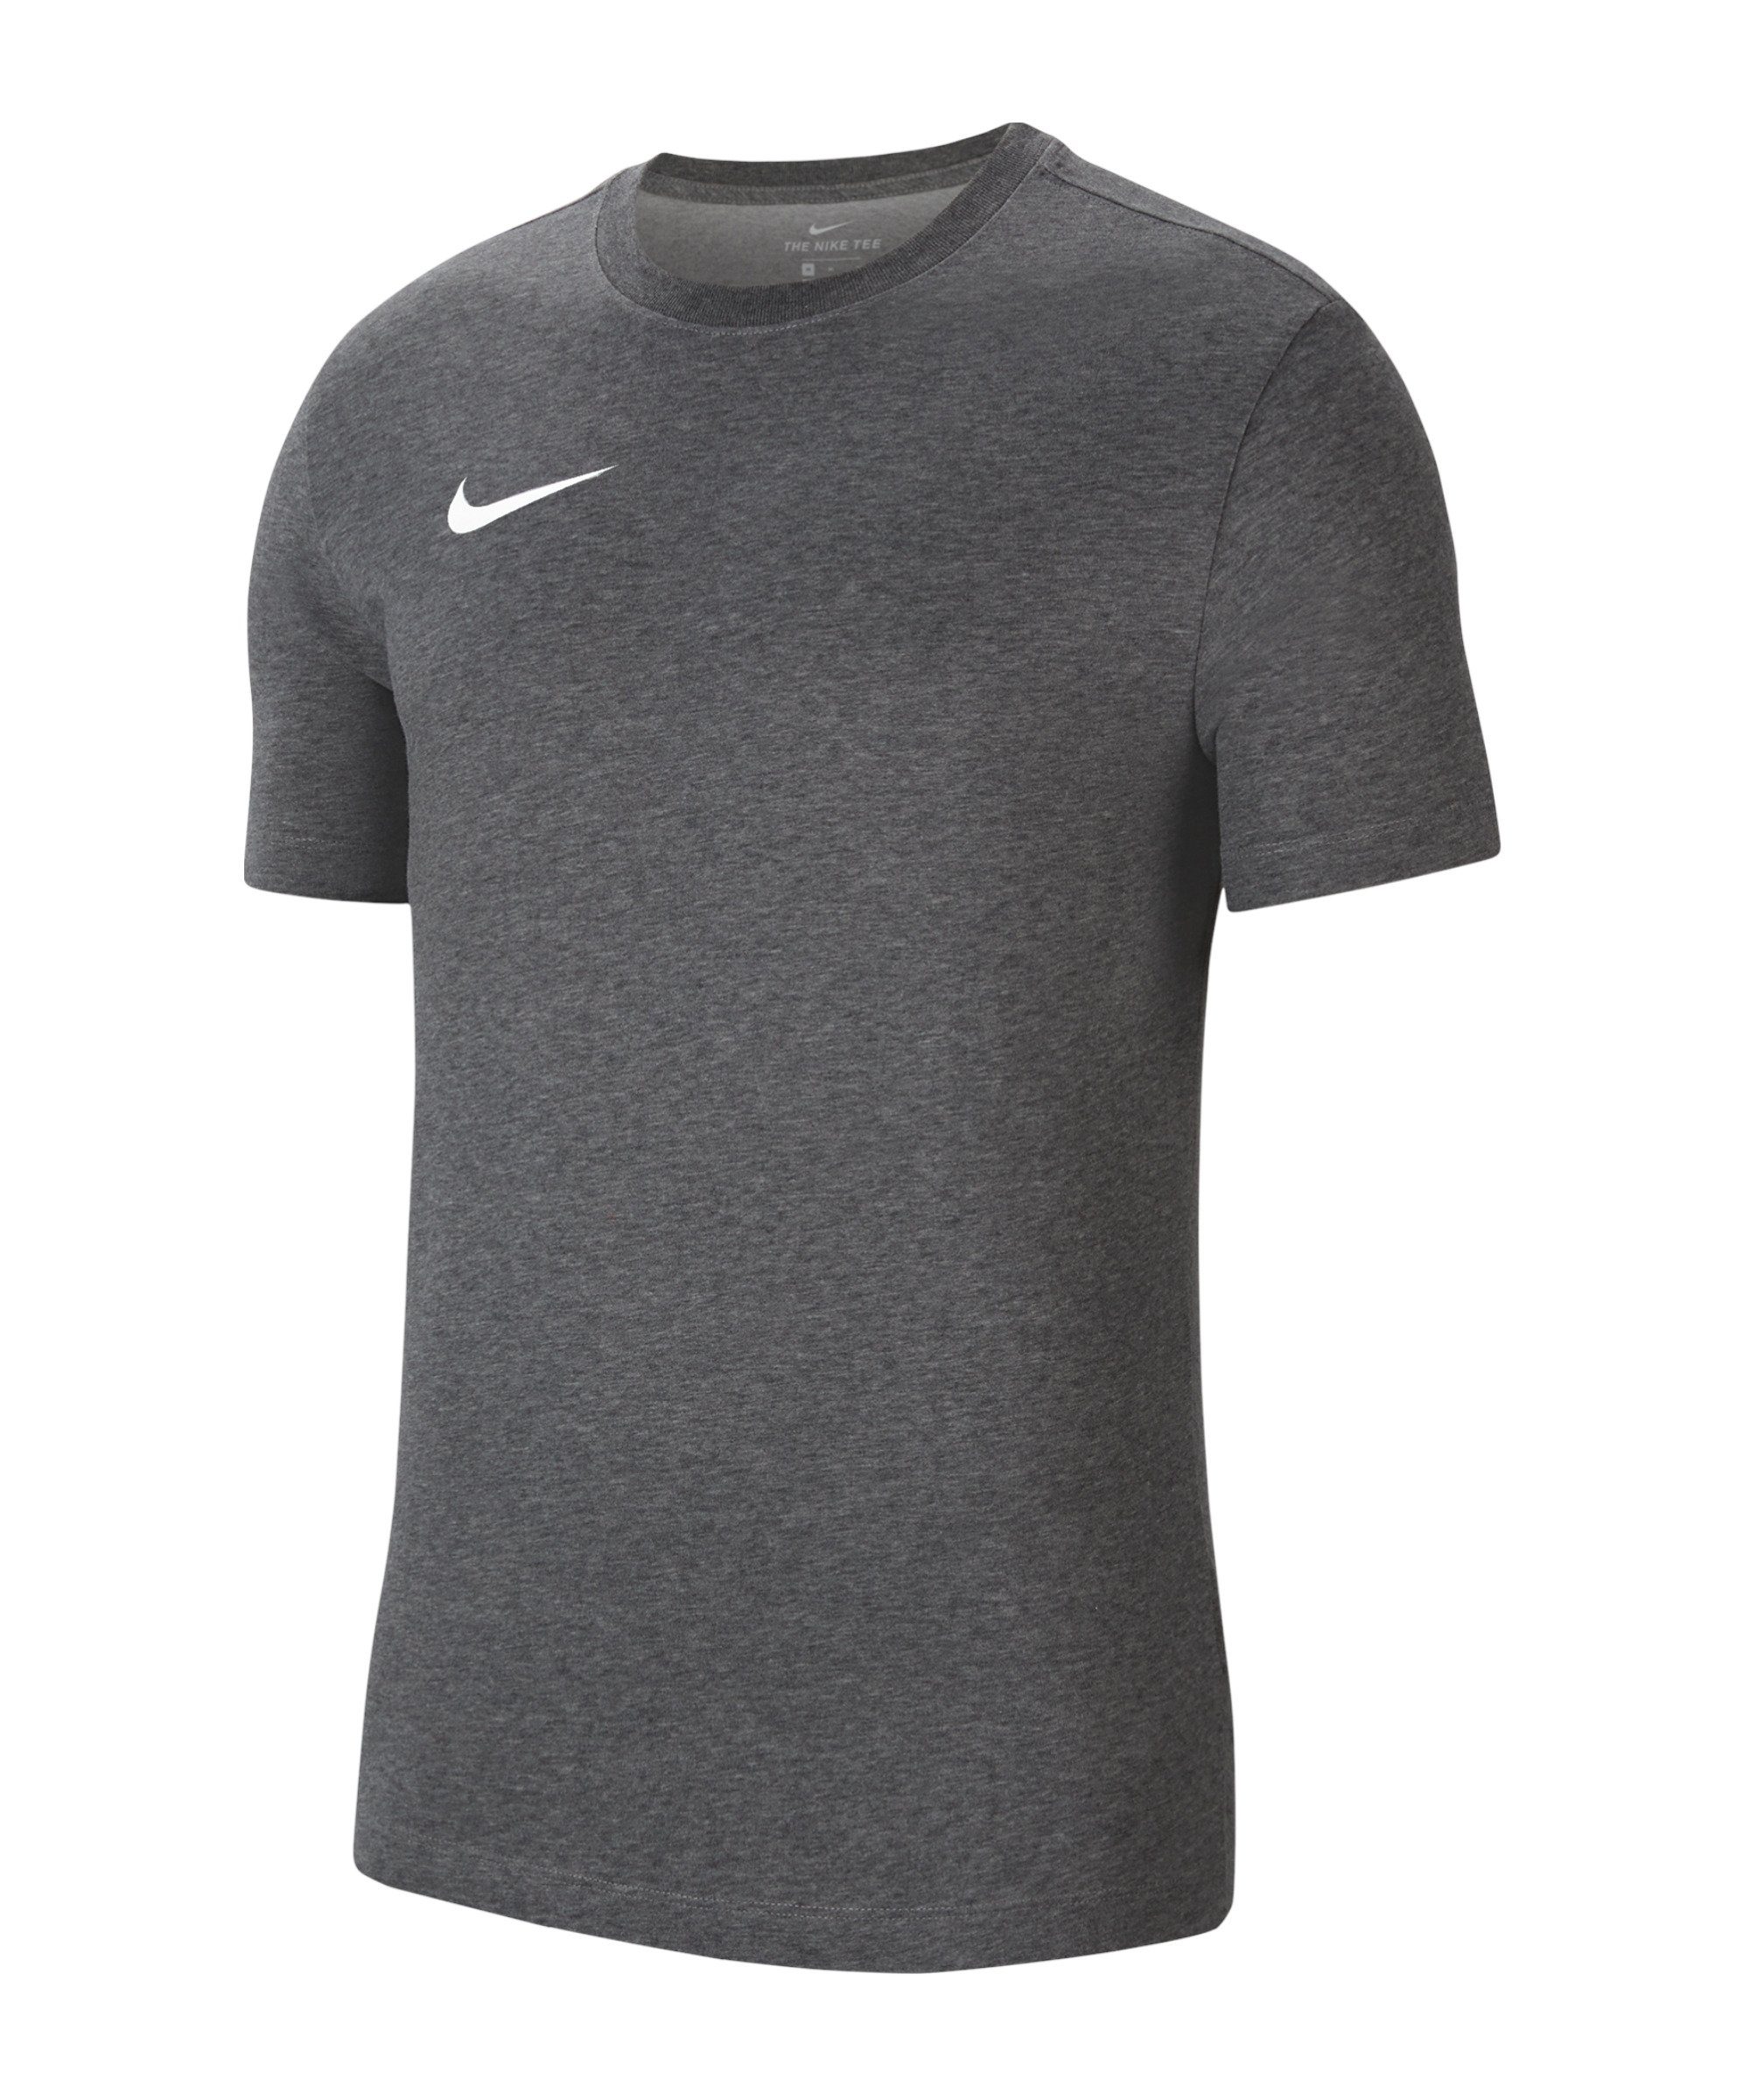 20 T-Shirt Nike T-Shirt Dry grauweiss default Park